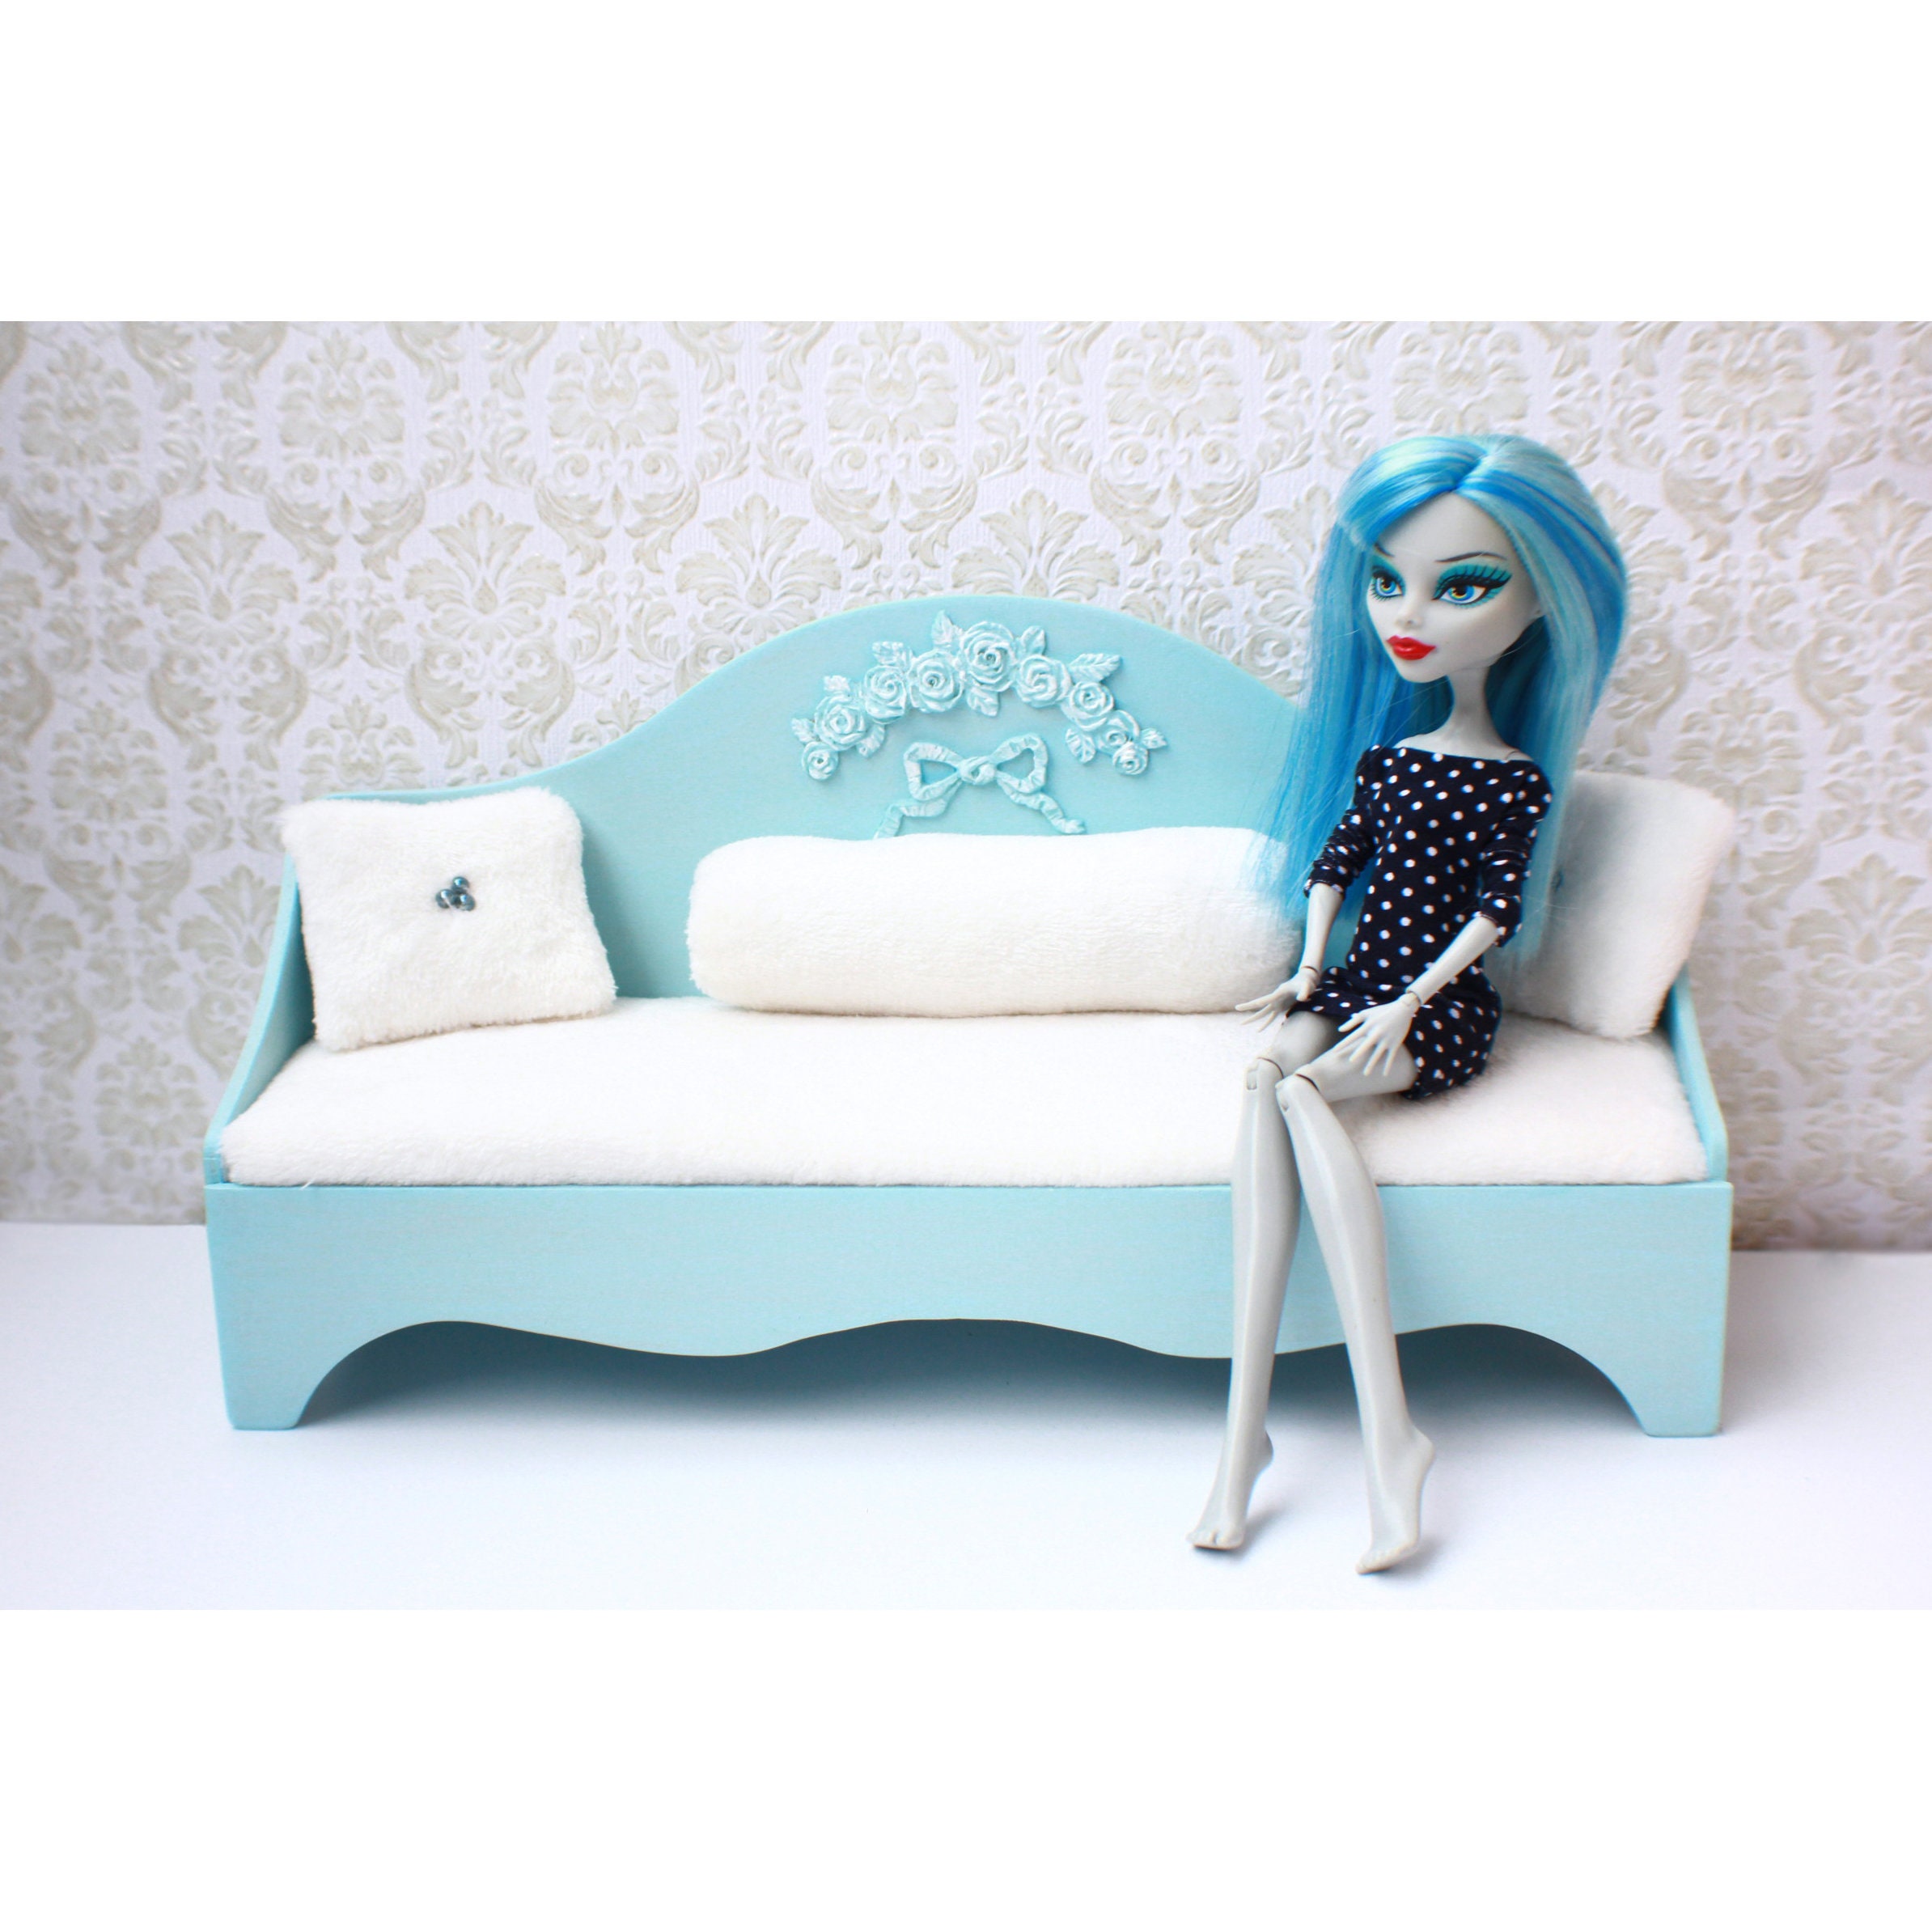 Кукольная мебель - Мебель для кукол Монстер Хай, Барби купить в Шопике | Могилев - 